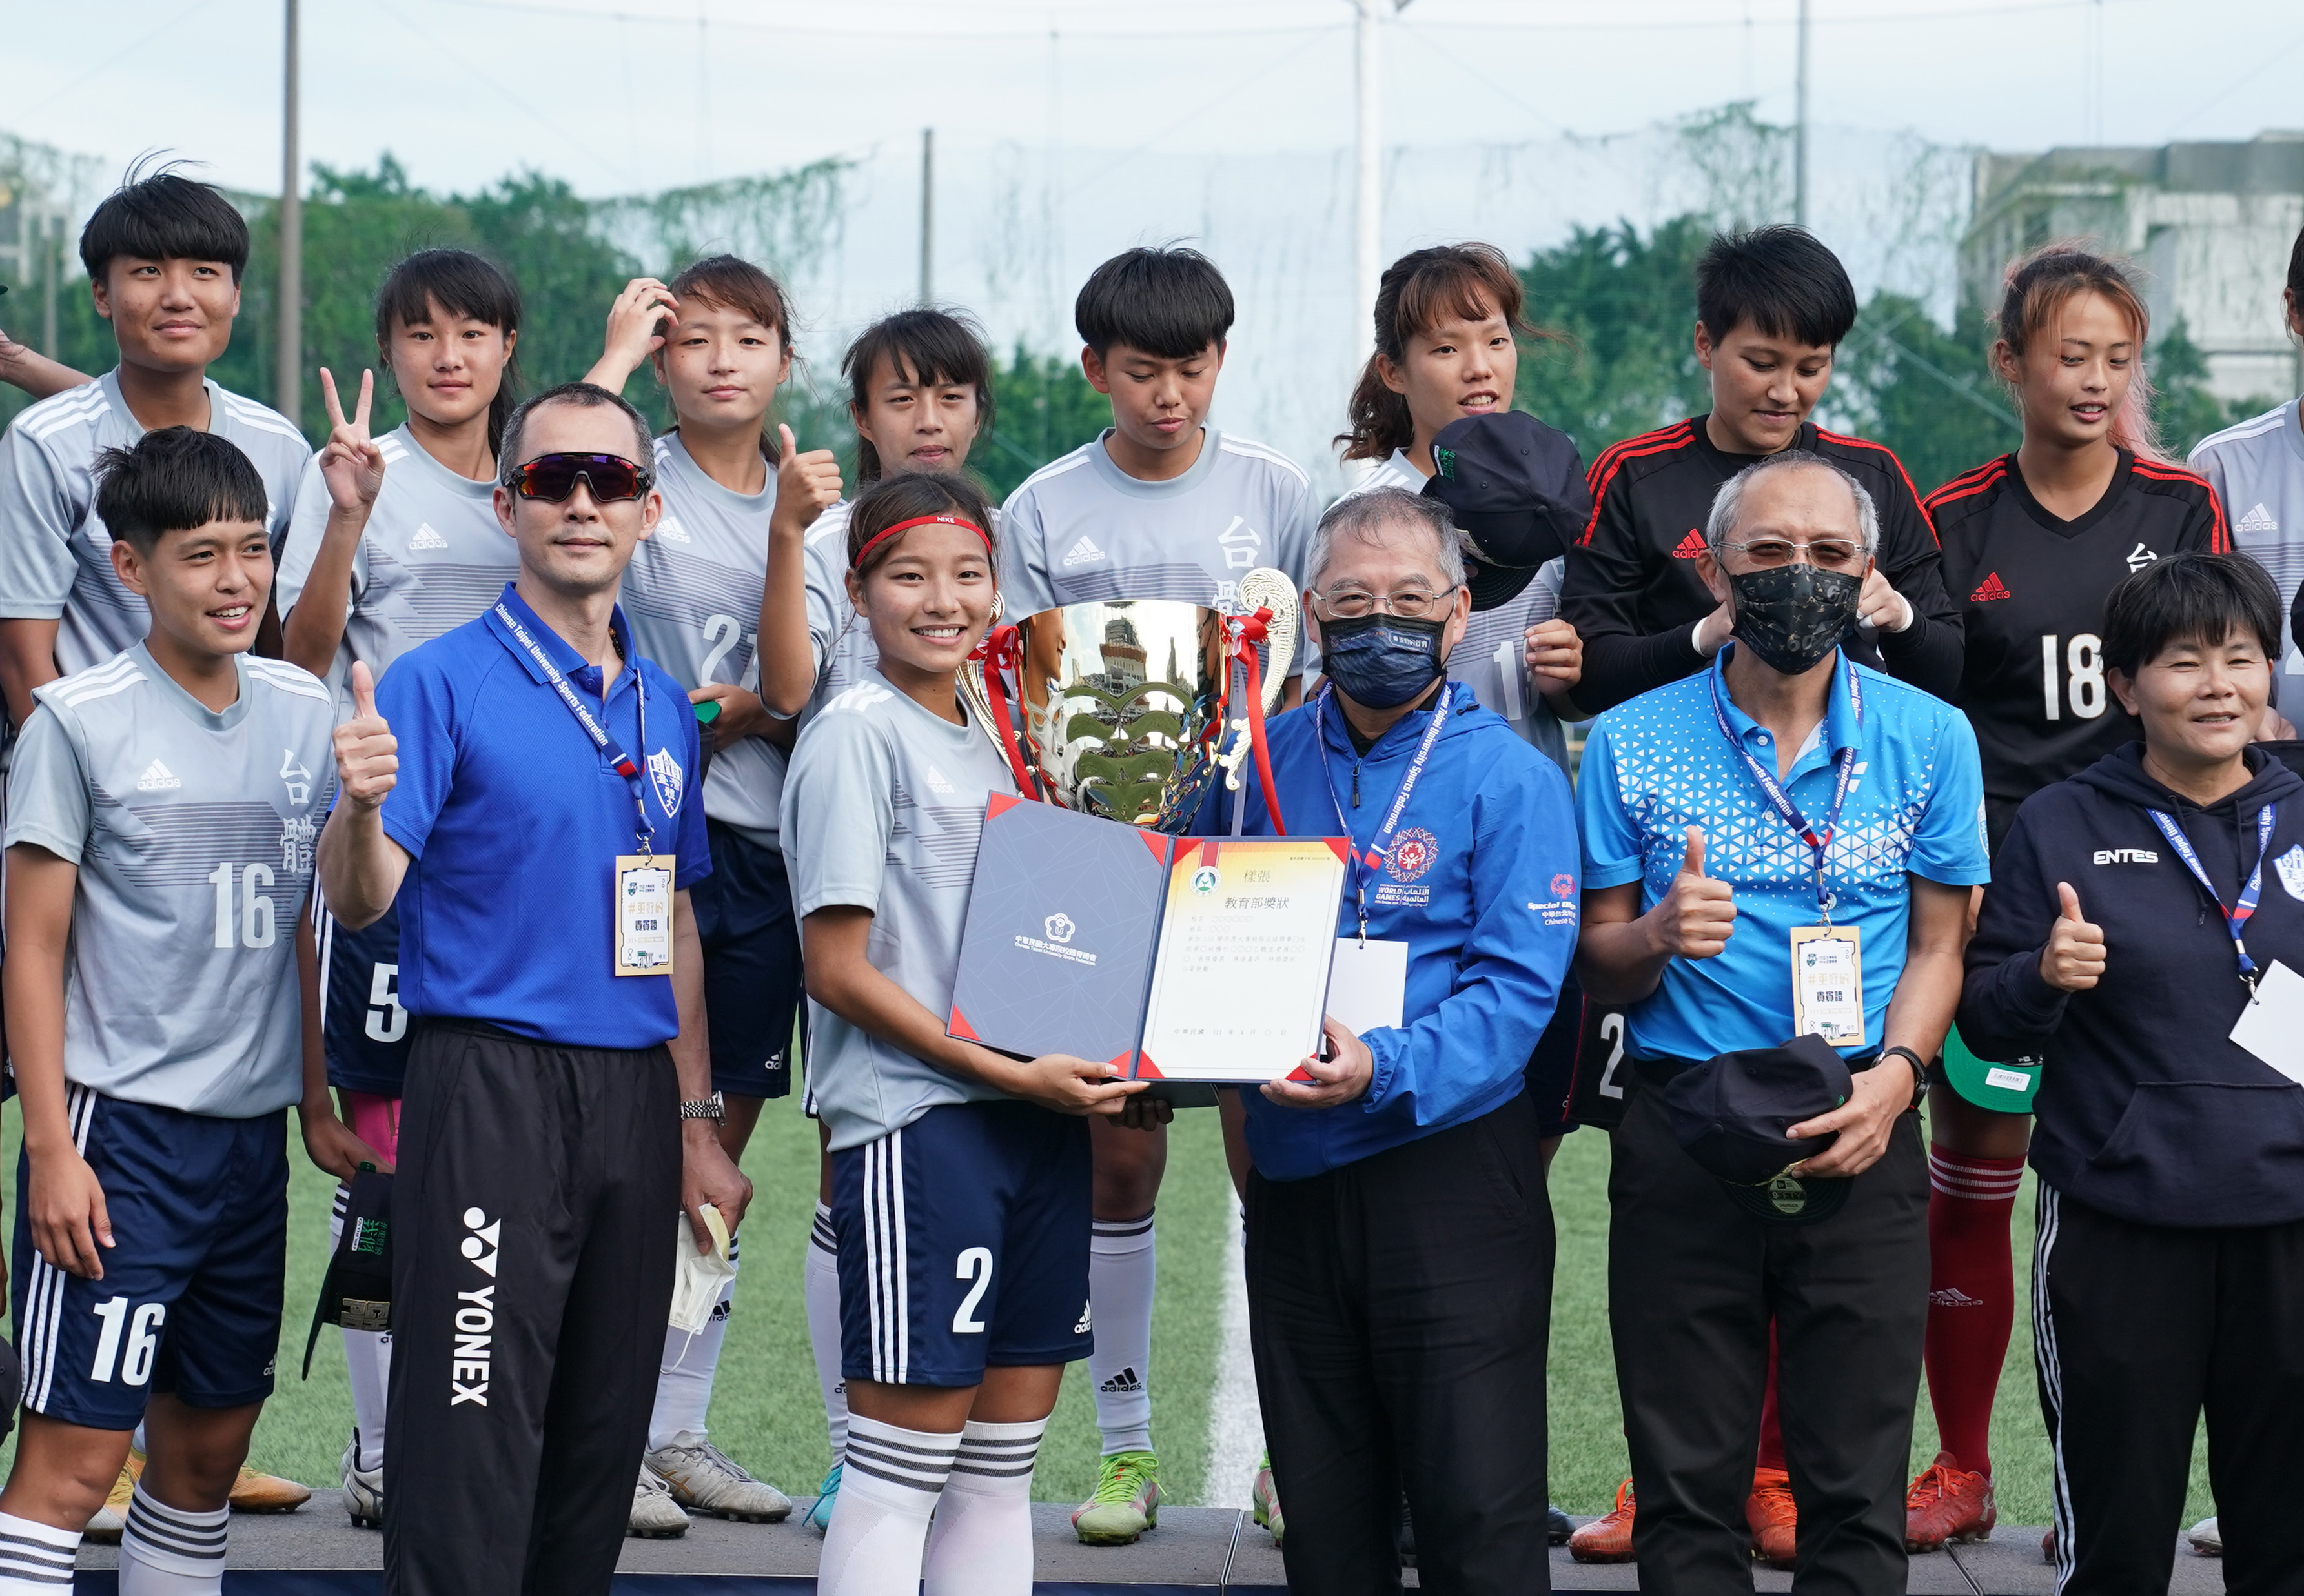 110學年度大專足球聯賽女生第一級組冠軍國立臺灣體育運動大學